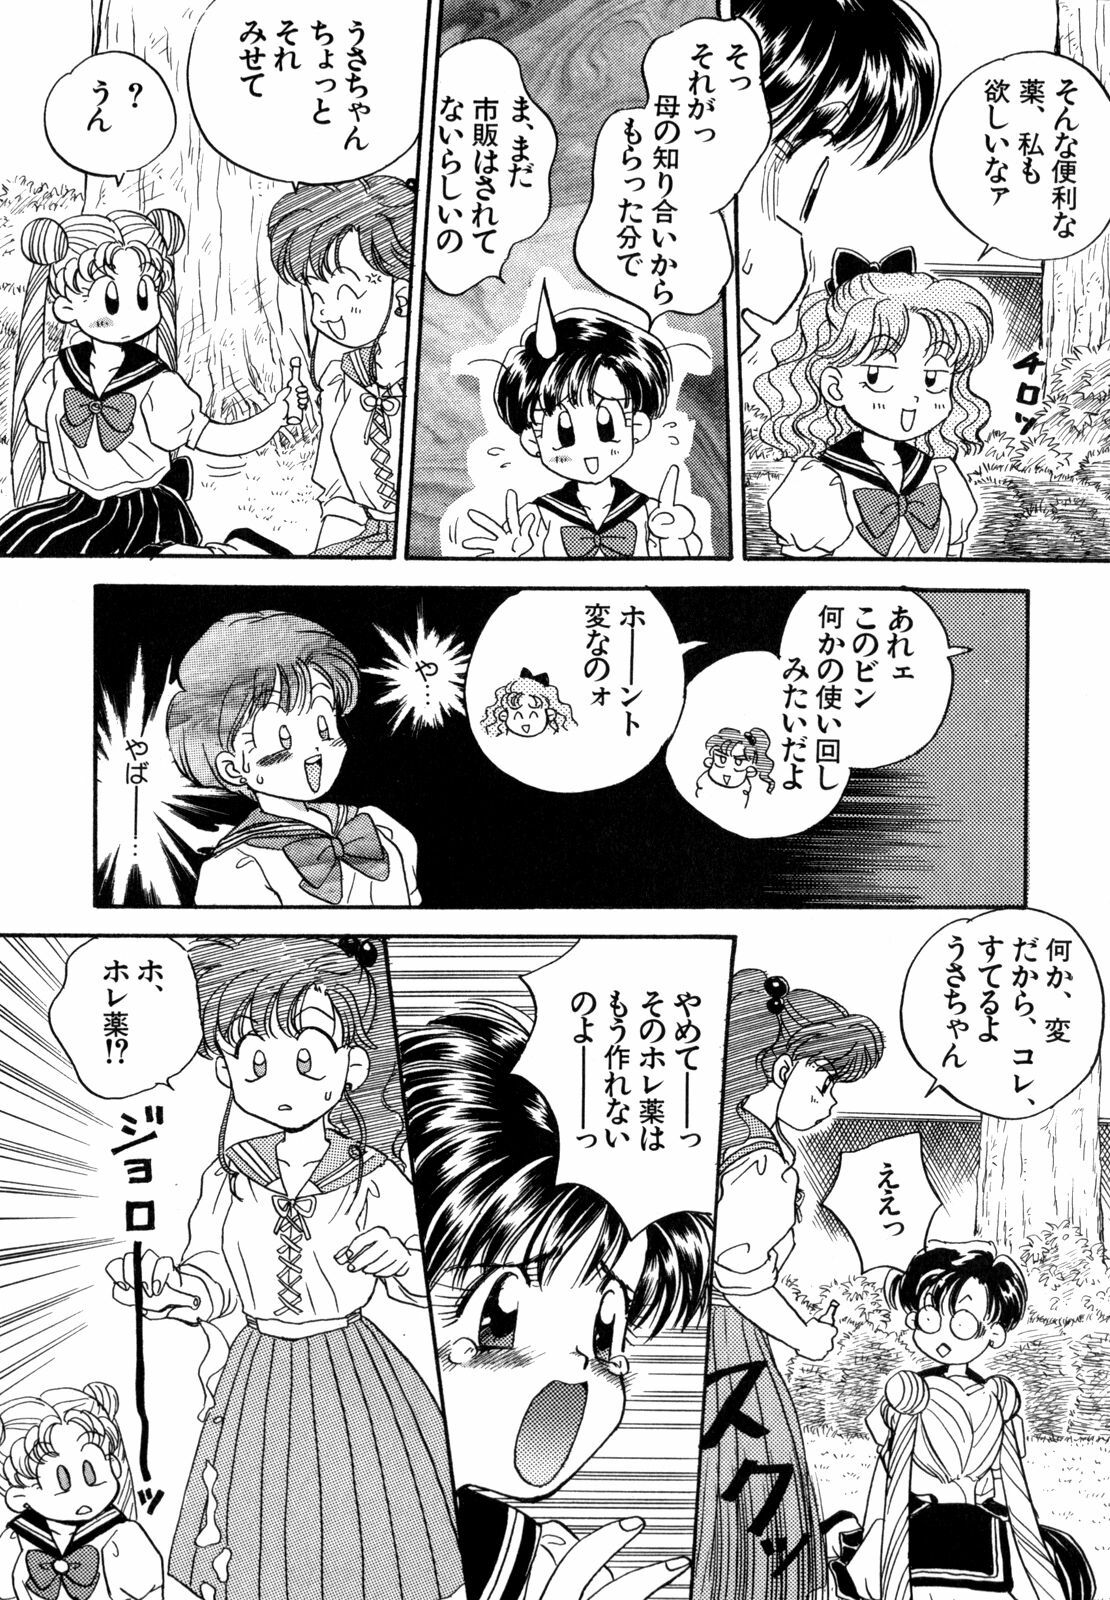 [Anthology] Lunatic Party 4 (Bishoujo Senshi Sailor Moon) page 32 full